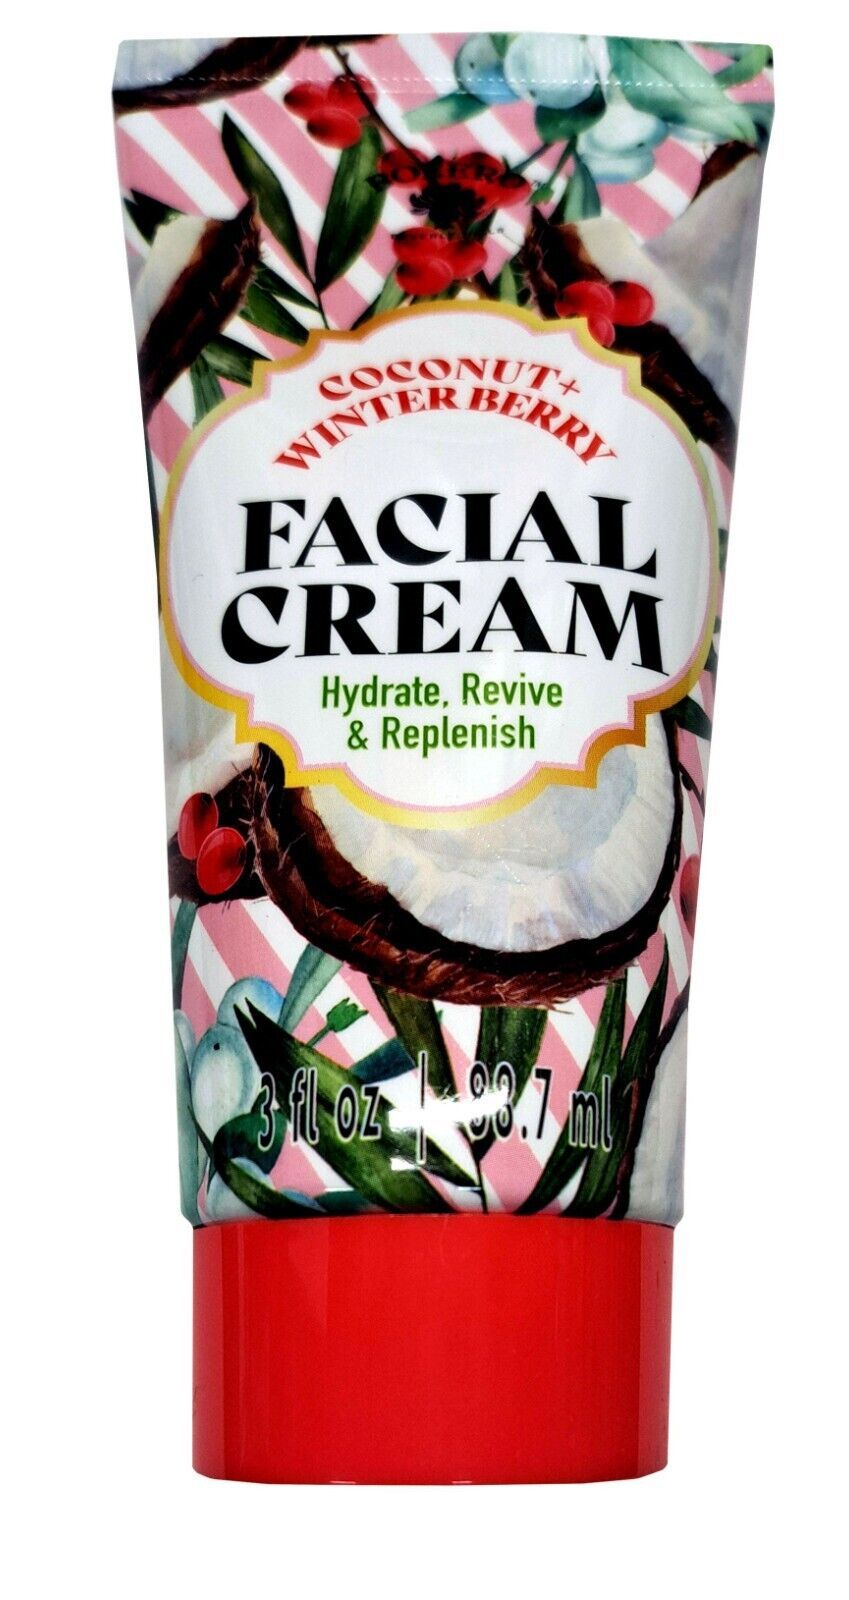 Bolero Facial Cream Coconut + Winter Berry Hydrate, Revive & Replenish 3fl oz - $11.87